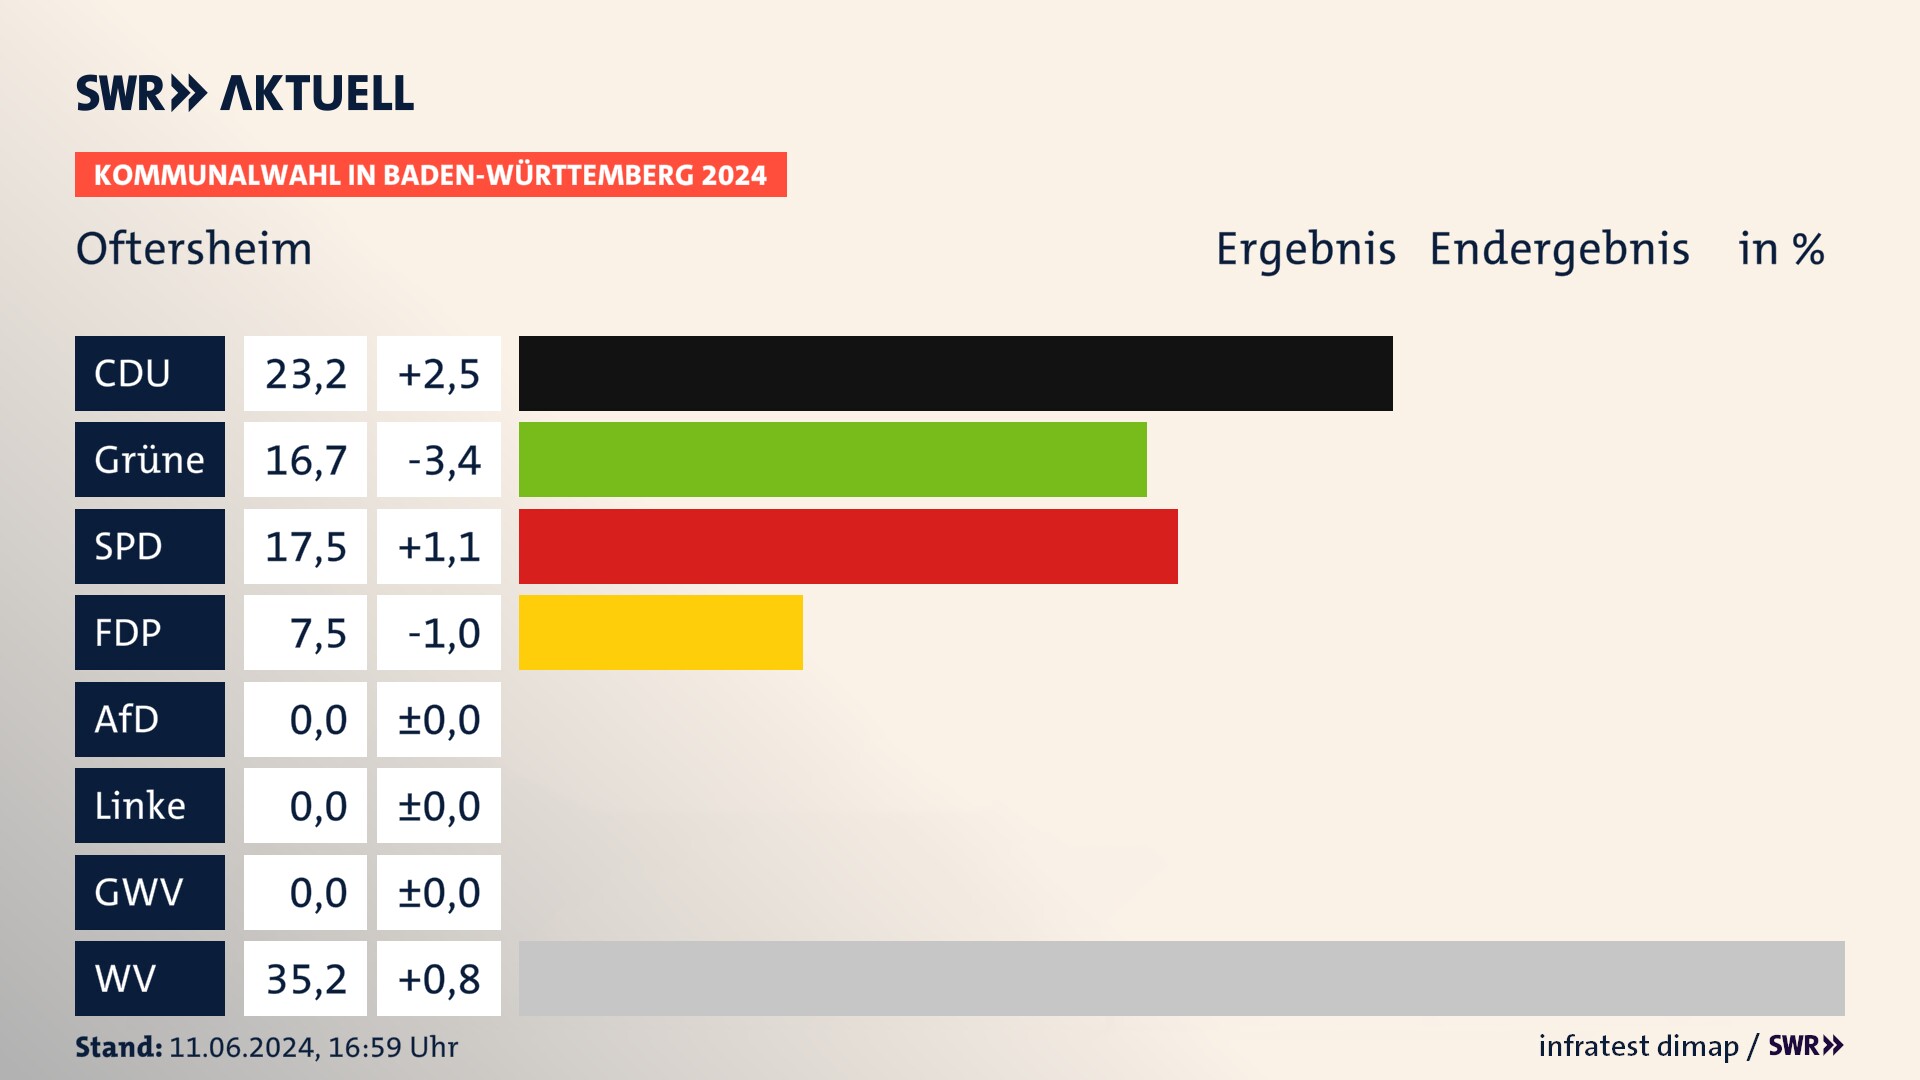 Kommunalwahl 2024 Endergebnis Zweitstimme für Oftersheim. In Oftersheim erzielt die CDU 23,2 Prozent der gültigen  Stimmen. Die Grünen landen bei 16,7 Prozent. Die SPD erreicht 17,5 Prozent. Die FDP kommt auf 7,5 Prozent. Die Wählervereinigungen landen bei 35,2 Prozent.